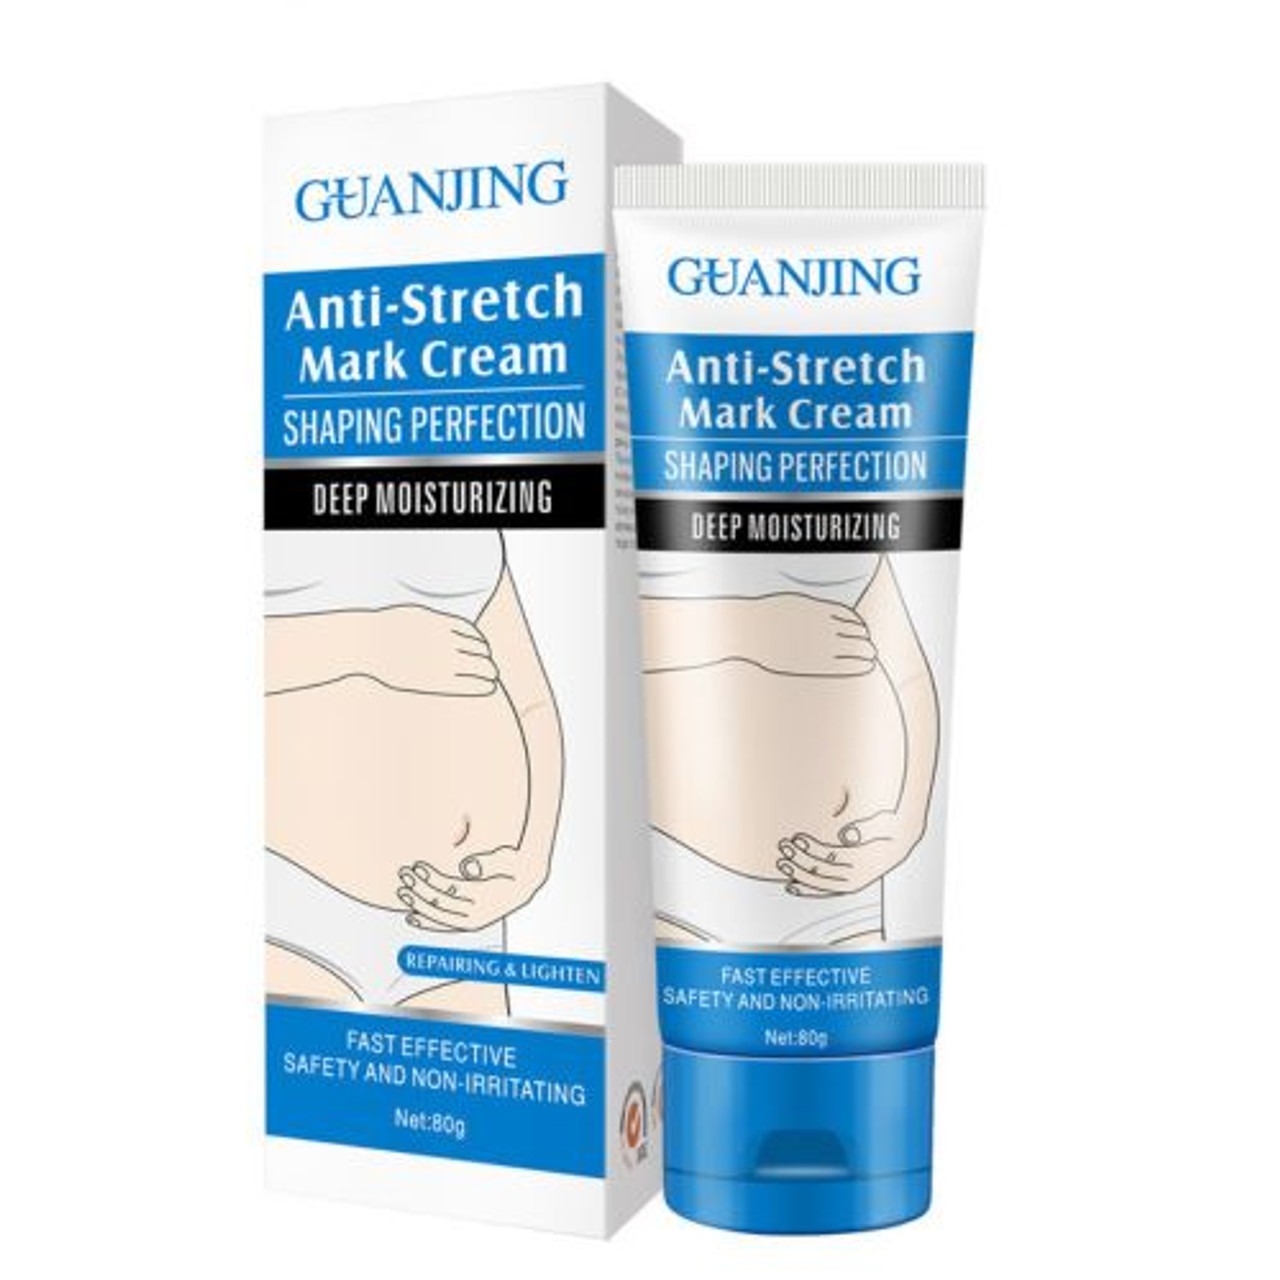 GUANJING Anti Stretch Mark Cream